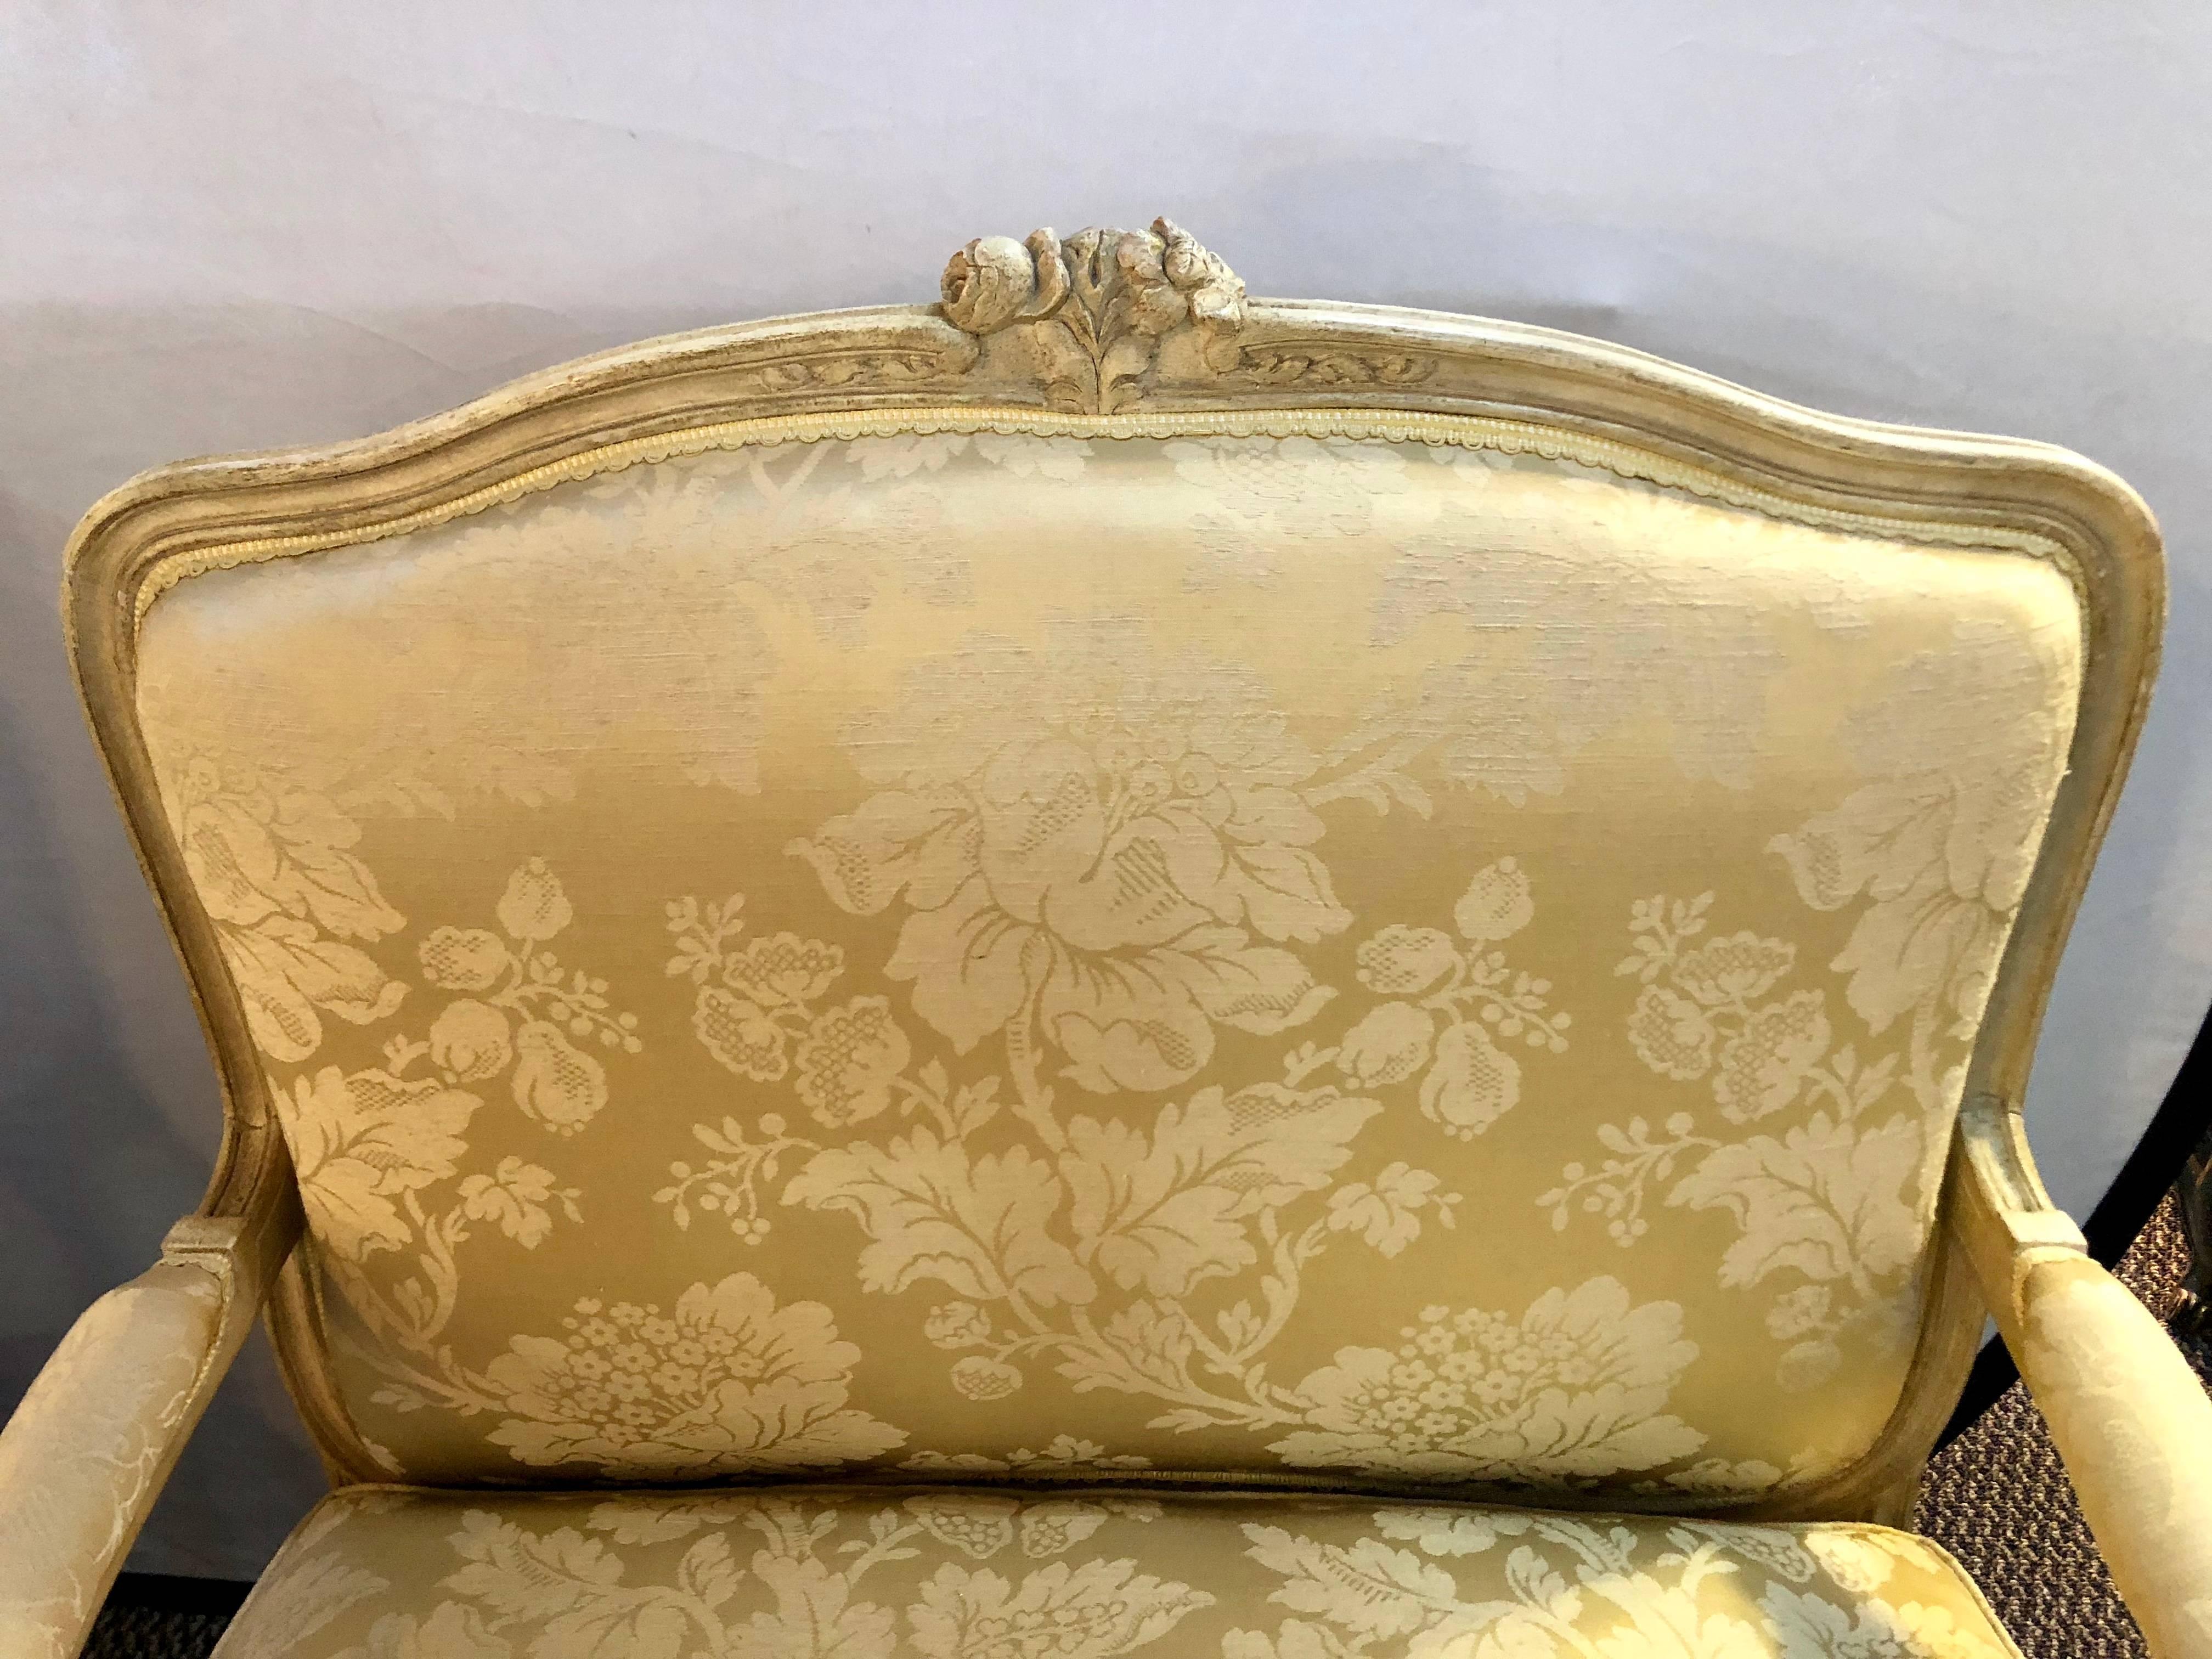 Une paire de chaises longues de style Louis XV par la Maison Jansen dans leur tissu d'origine. Une paire de chaises finement sculptées avec une finition vieillie et des bras latéraux ouverts. Chacun d'eux est fabriqué dans un tissu floral épuré avec